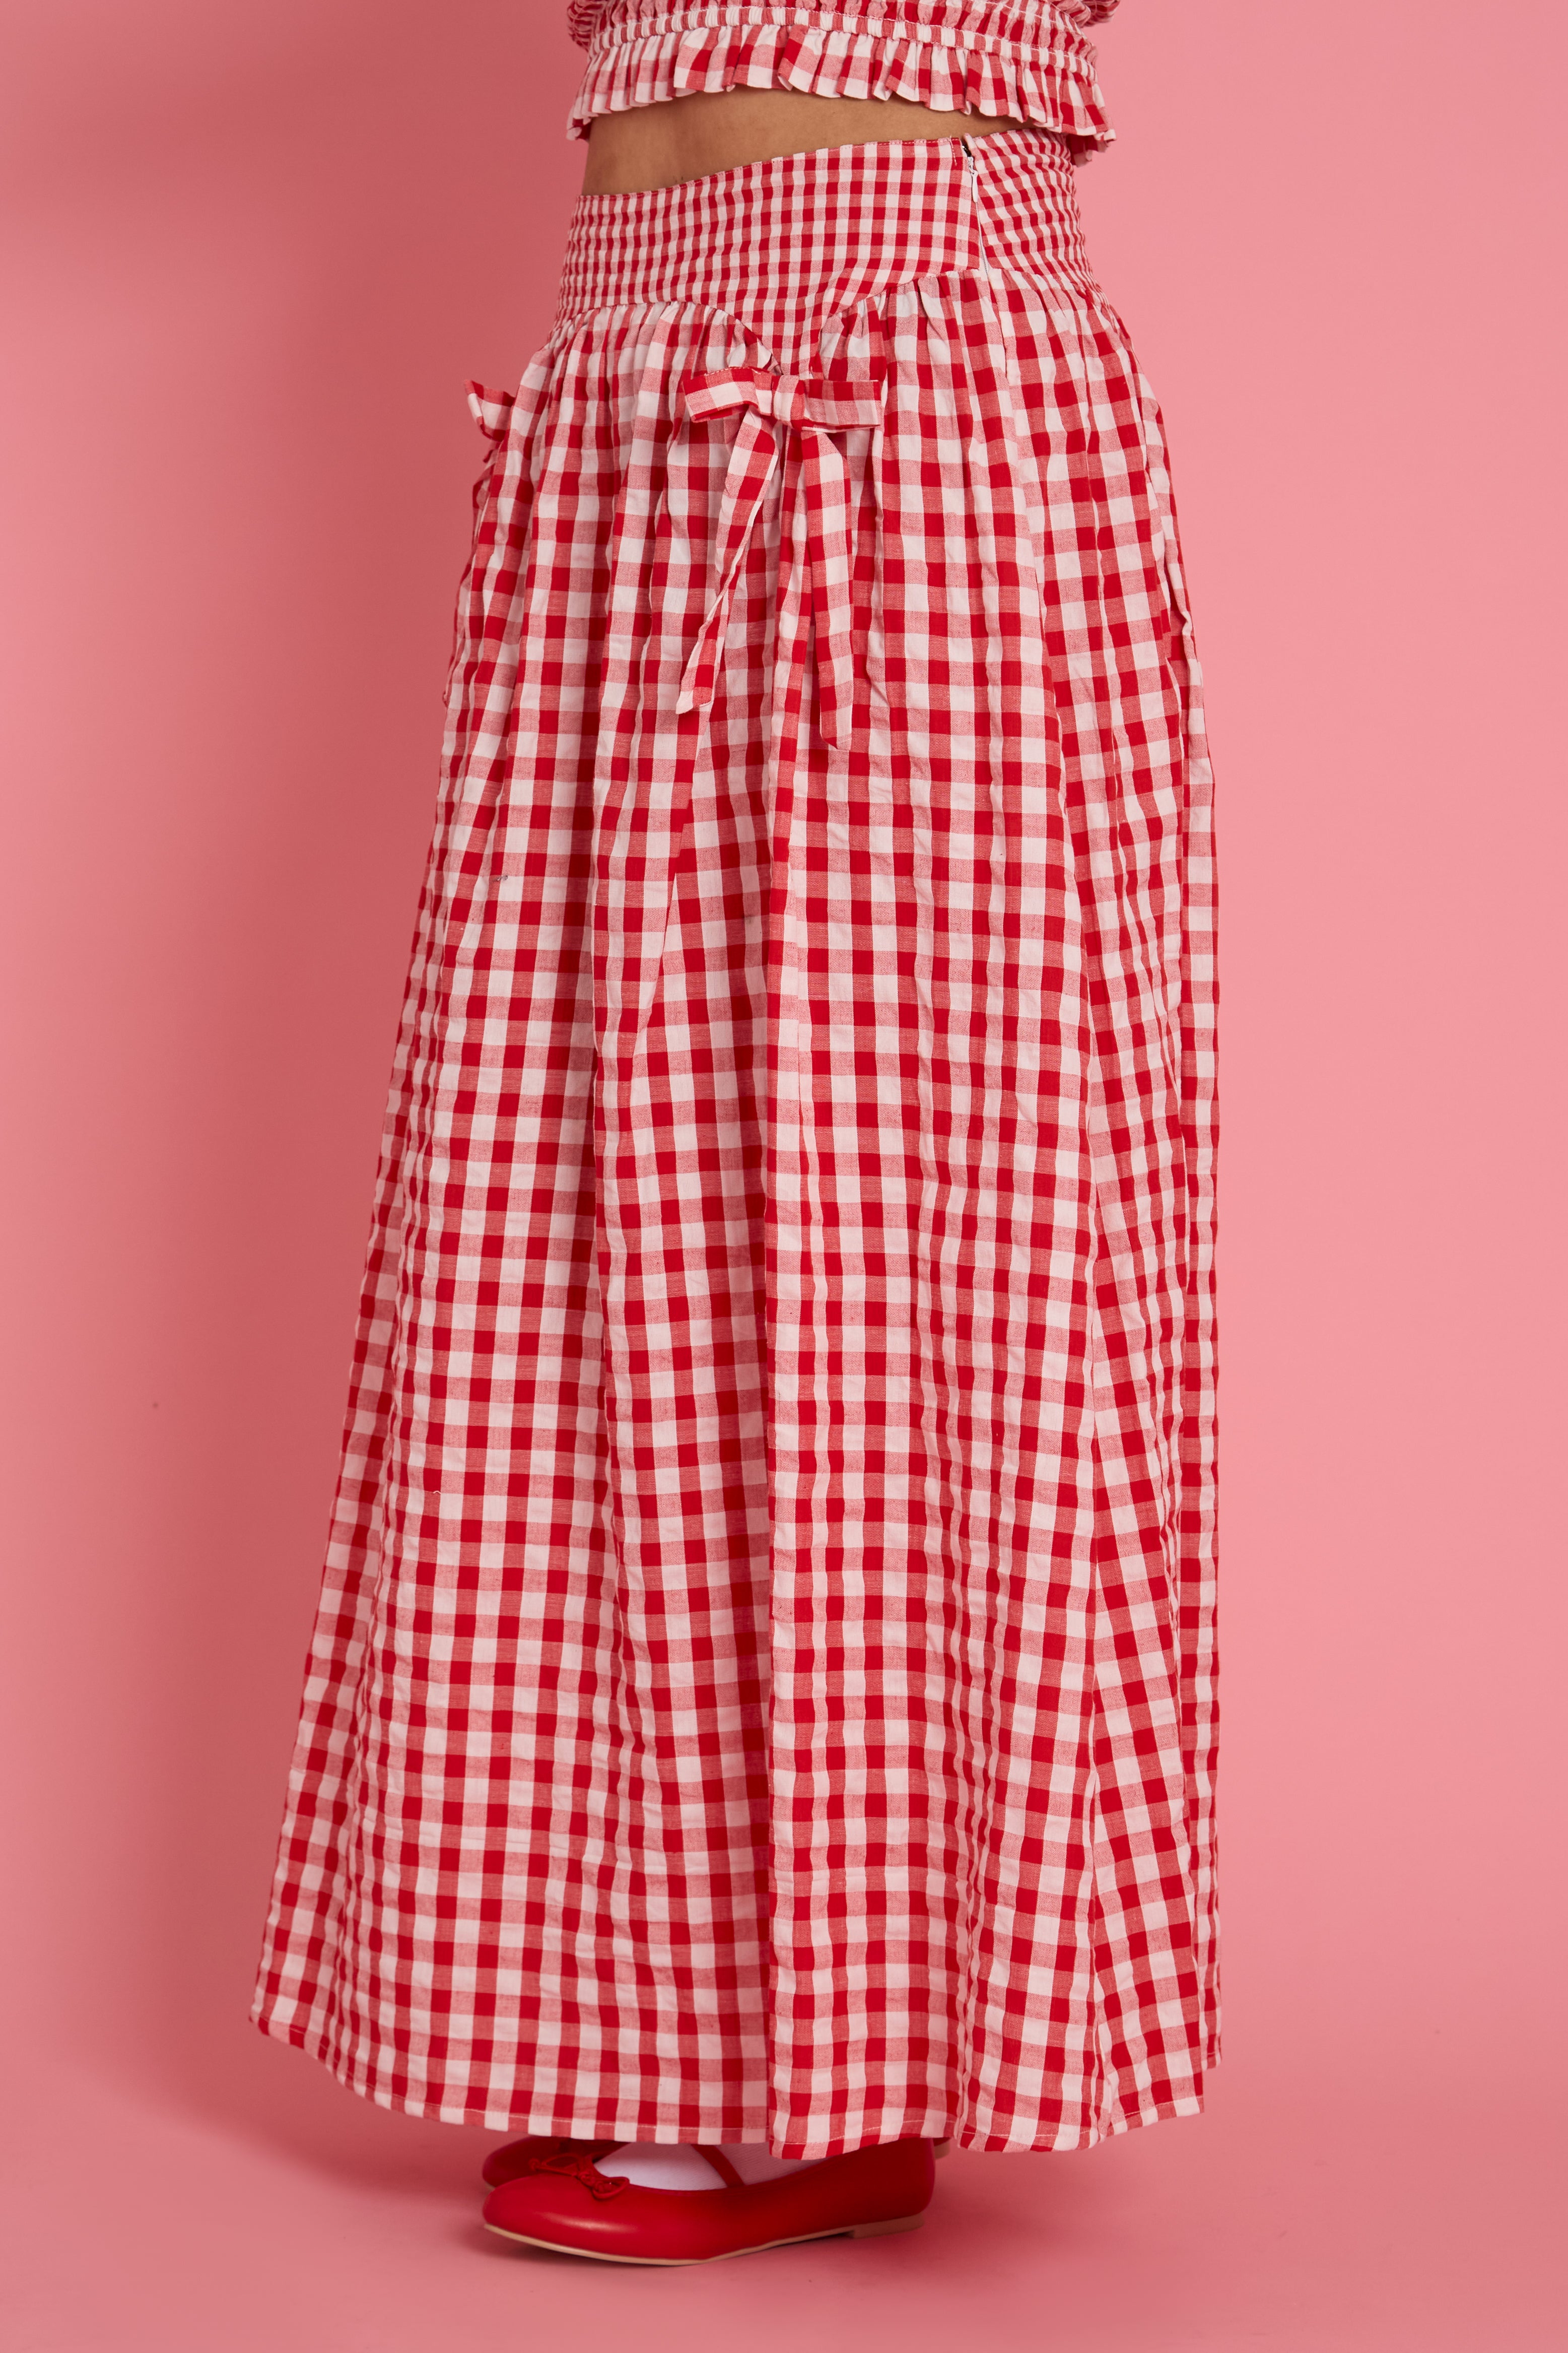 Sydney Bow Gingham Midaxi Skirt - Curve